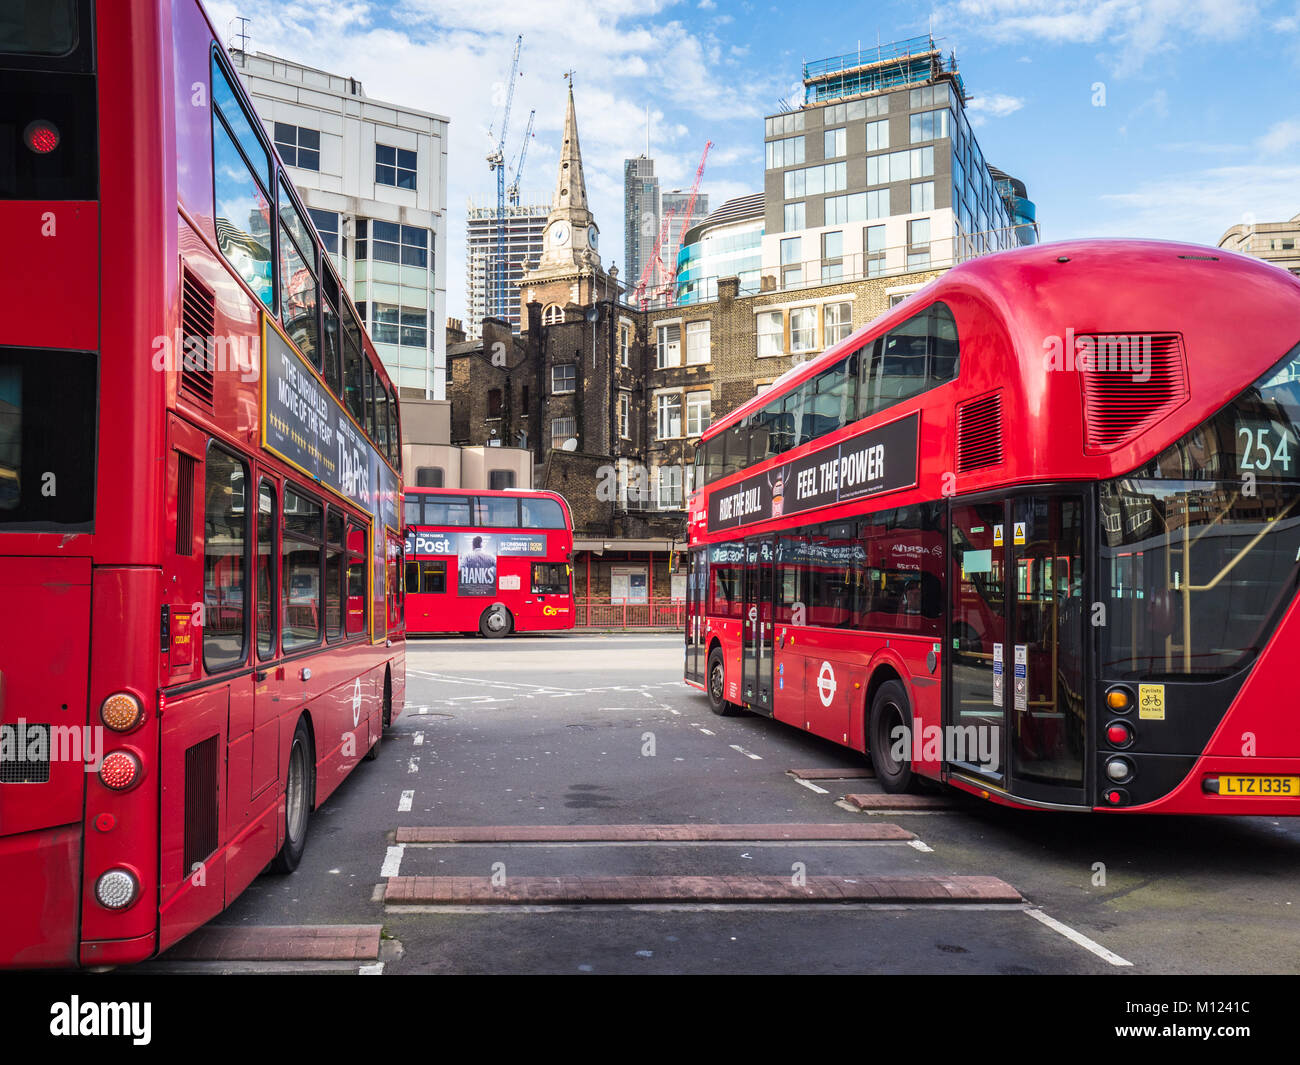 Dépôt de bus de Londres Aldgate Station de bus dans la ville de London Financial District, UK, administré et maintenu par Transport for London TfL Banque D'Images